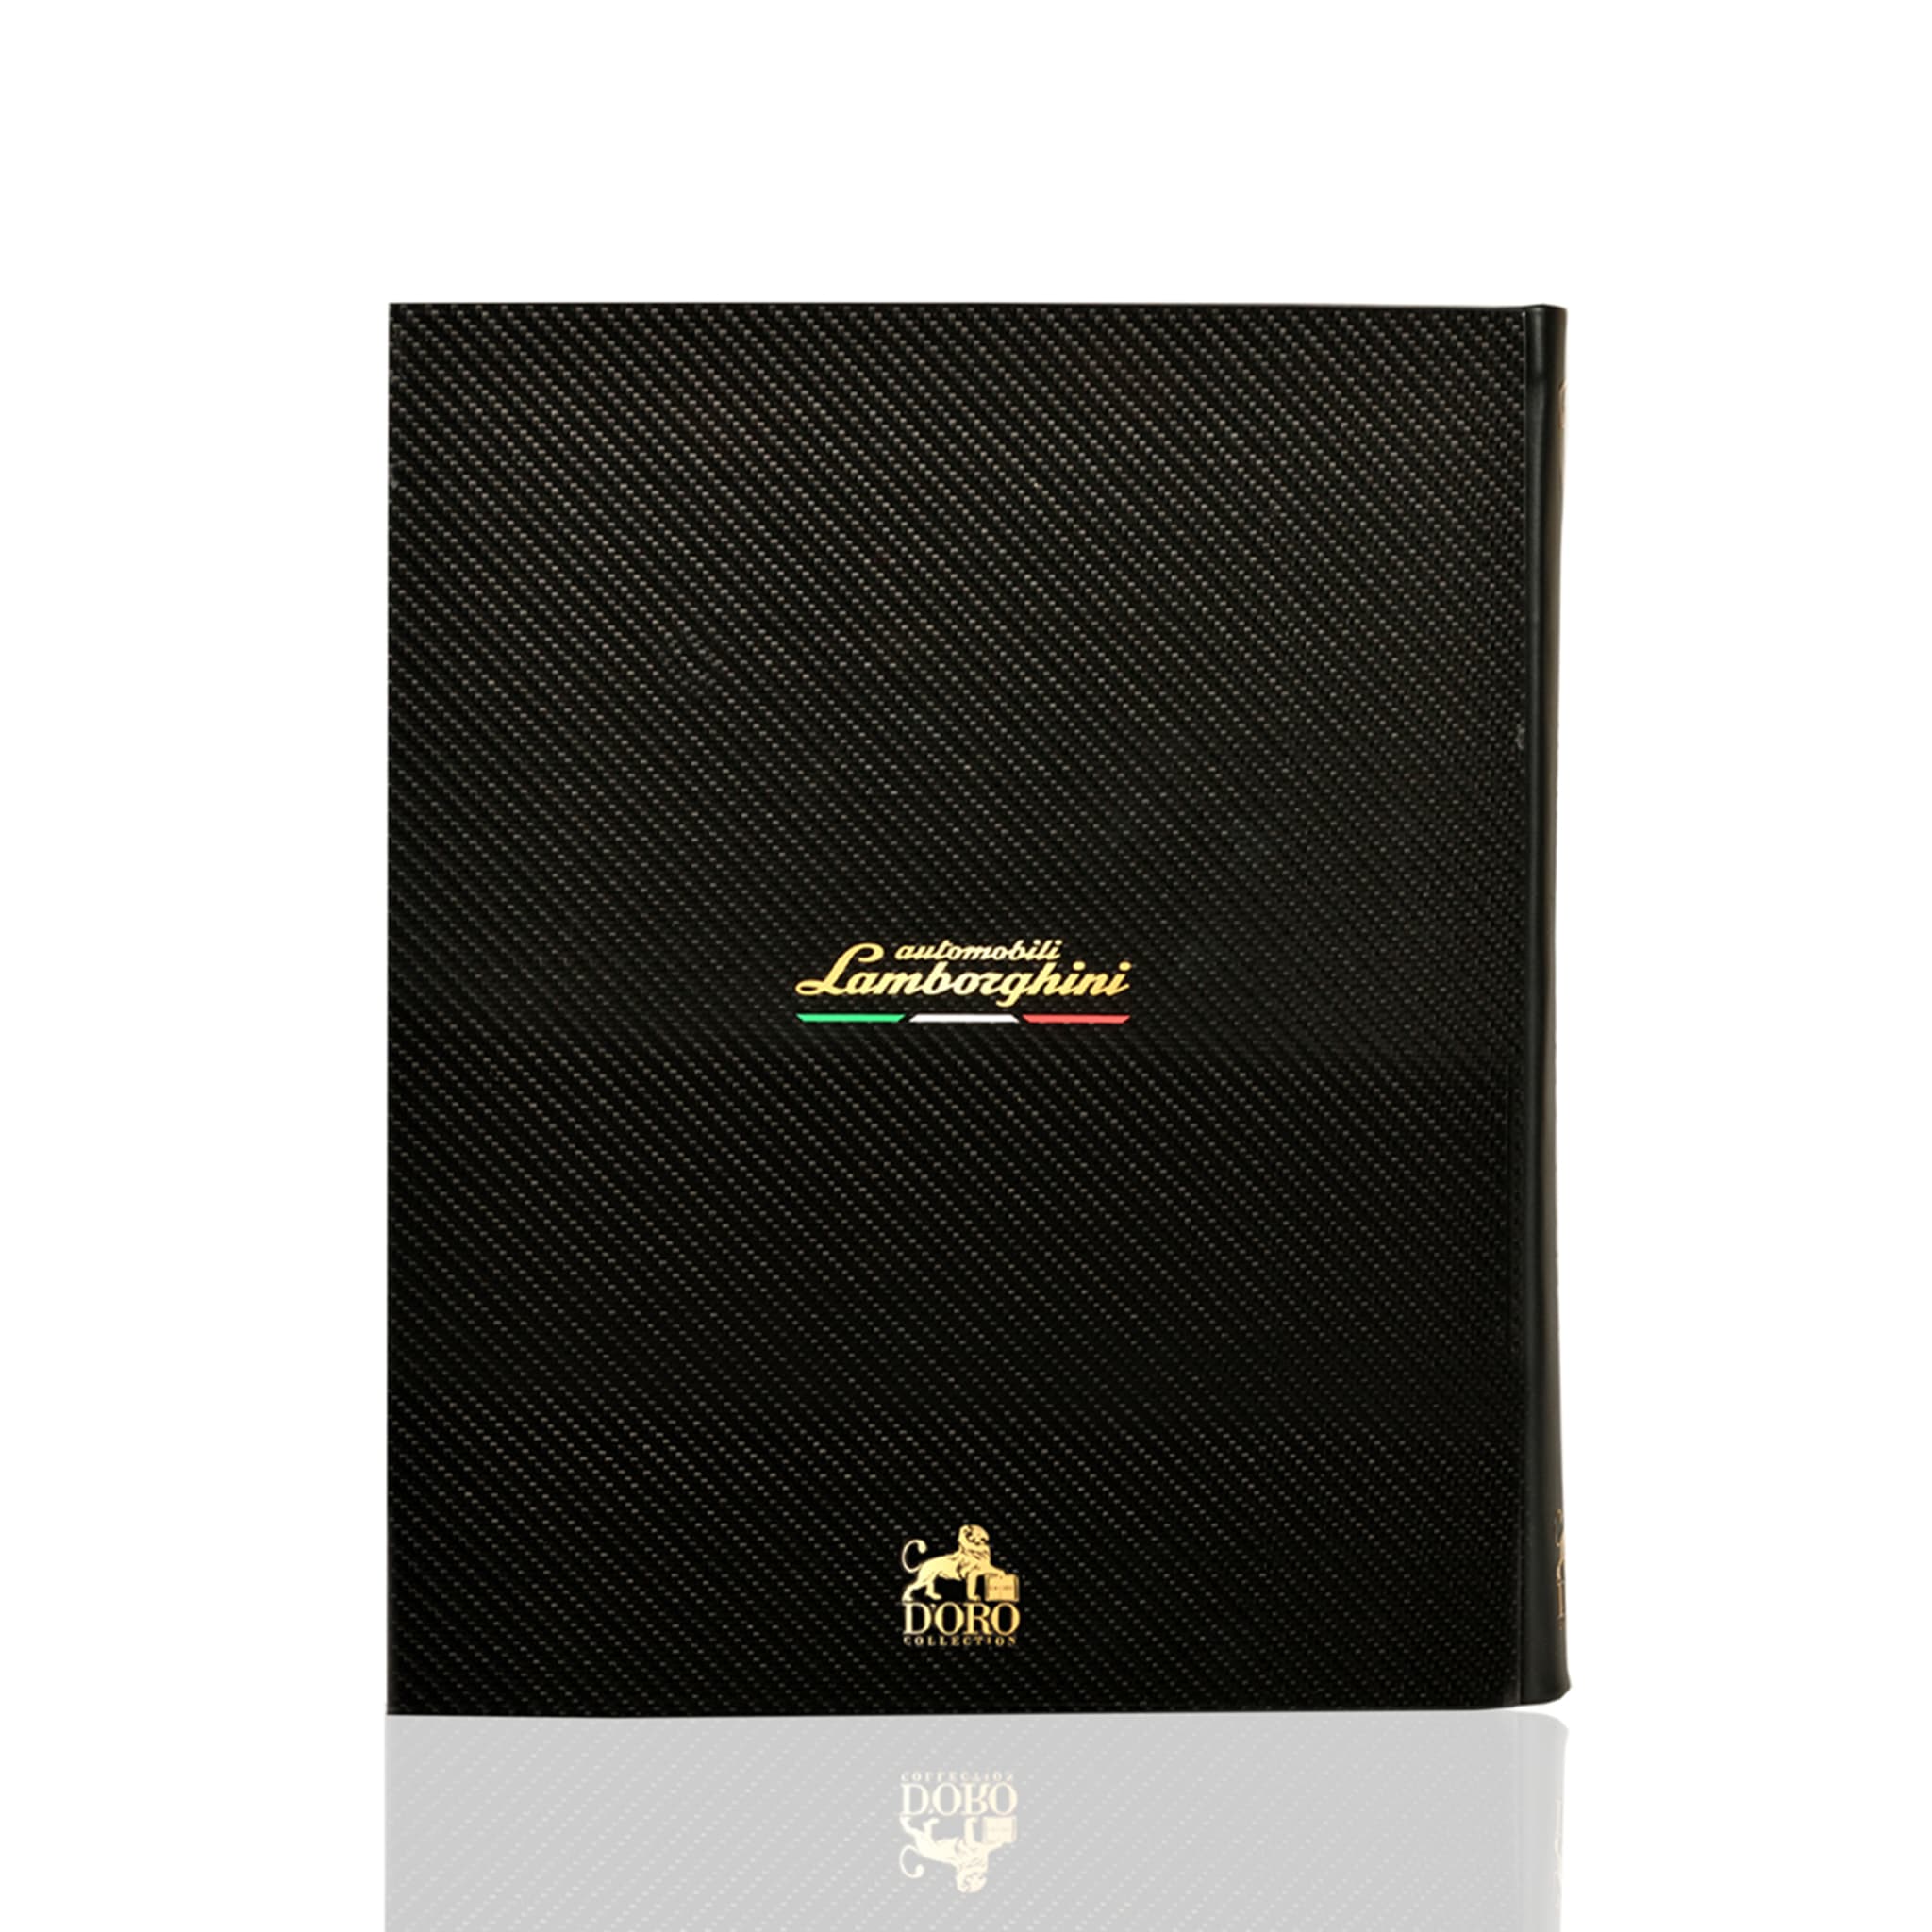 Dna Lamborghini II Edition Book - Alternative view 5